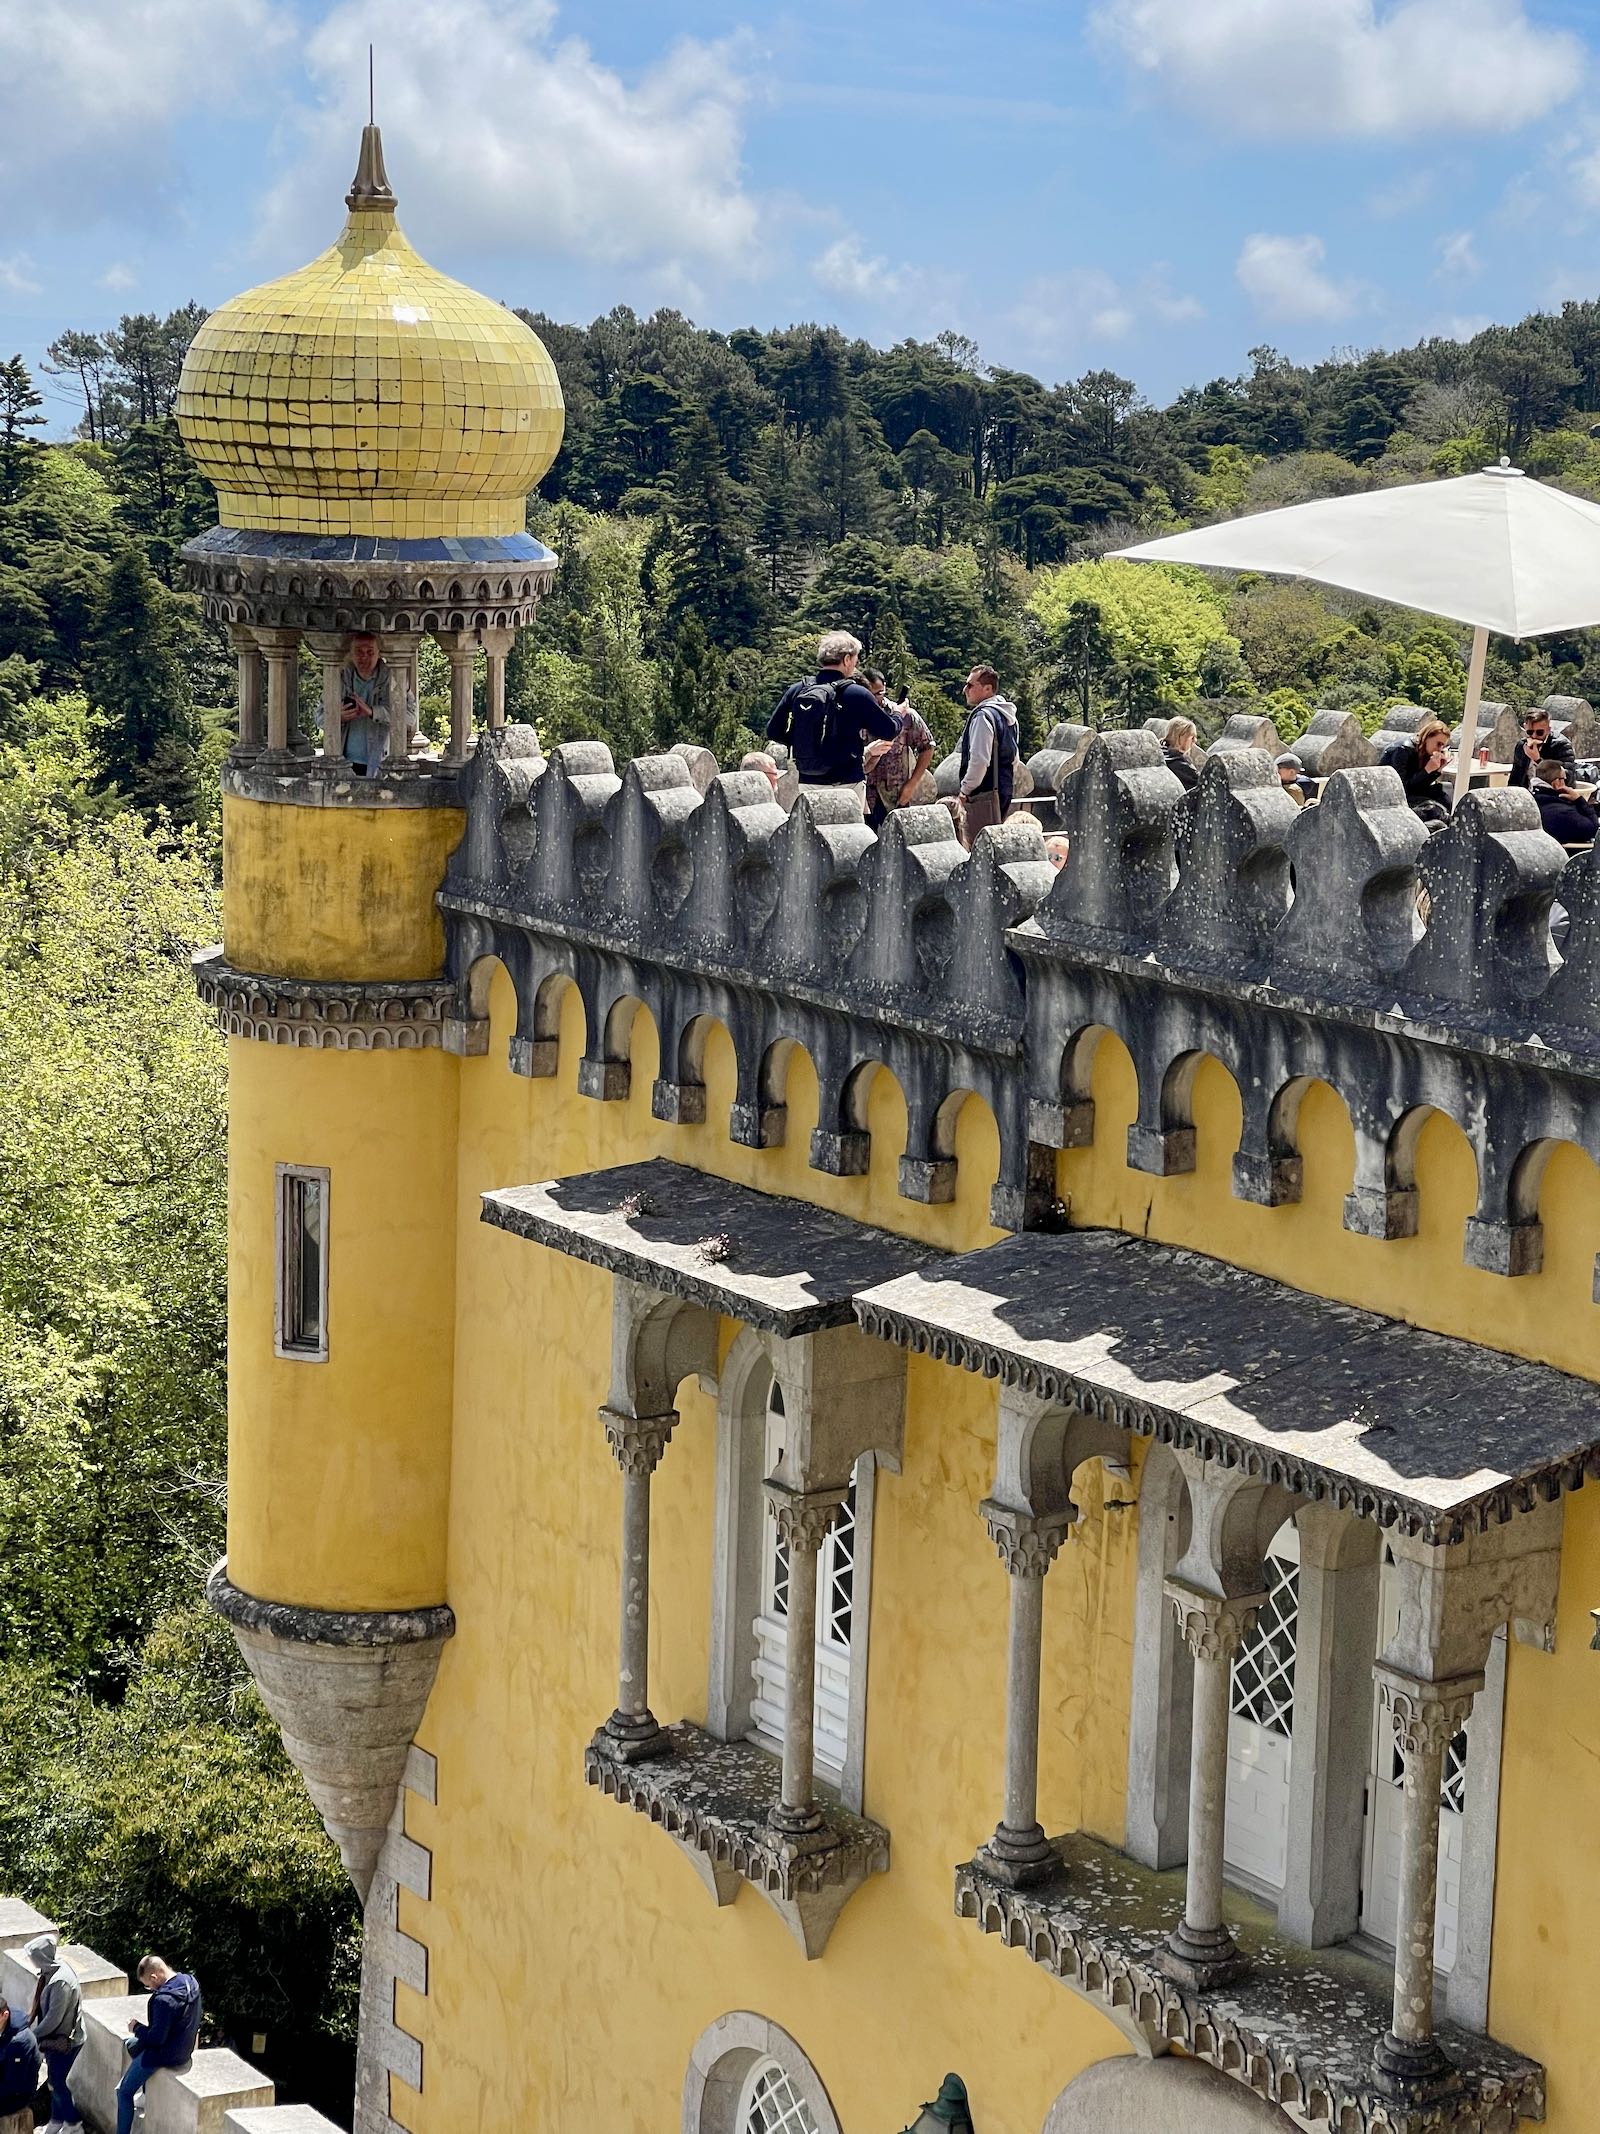 Warna Kuning Khas Pena Palace